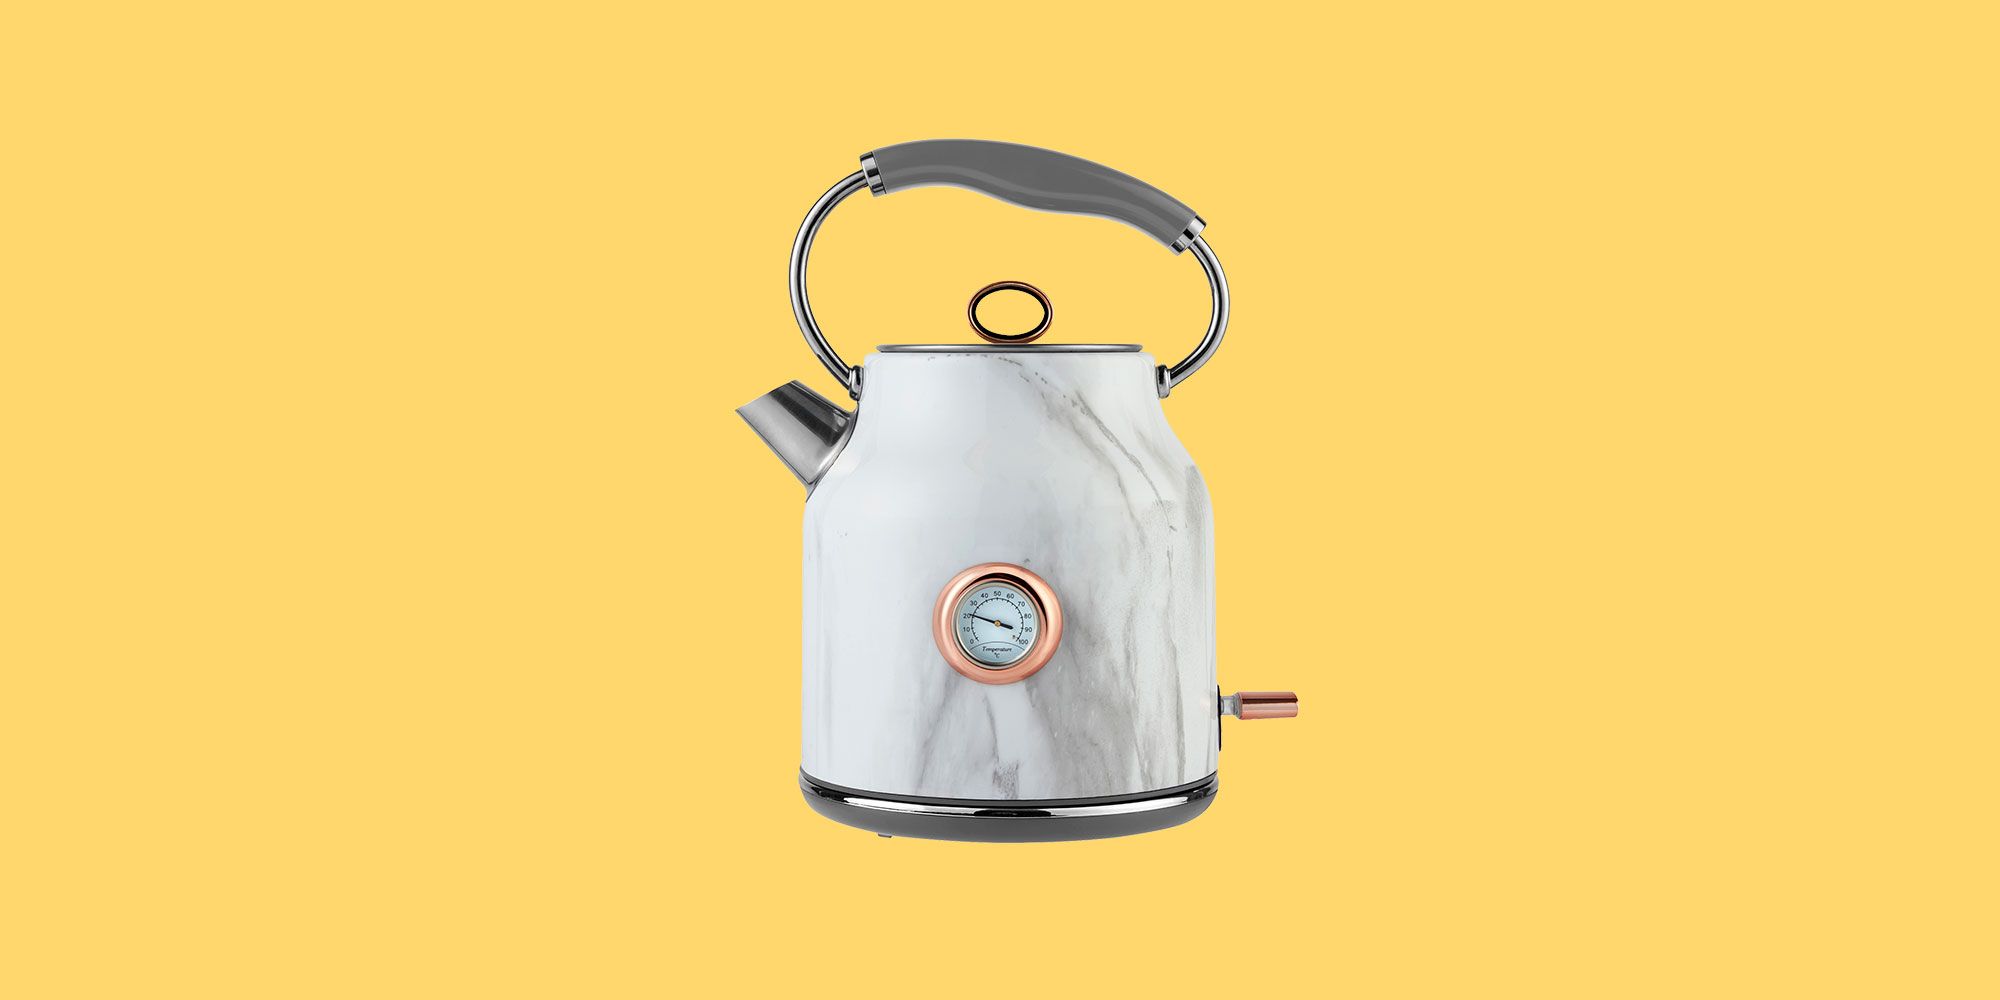 rapid boil kettle